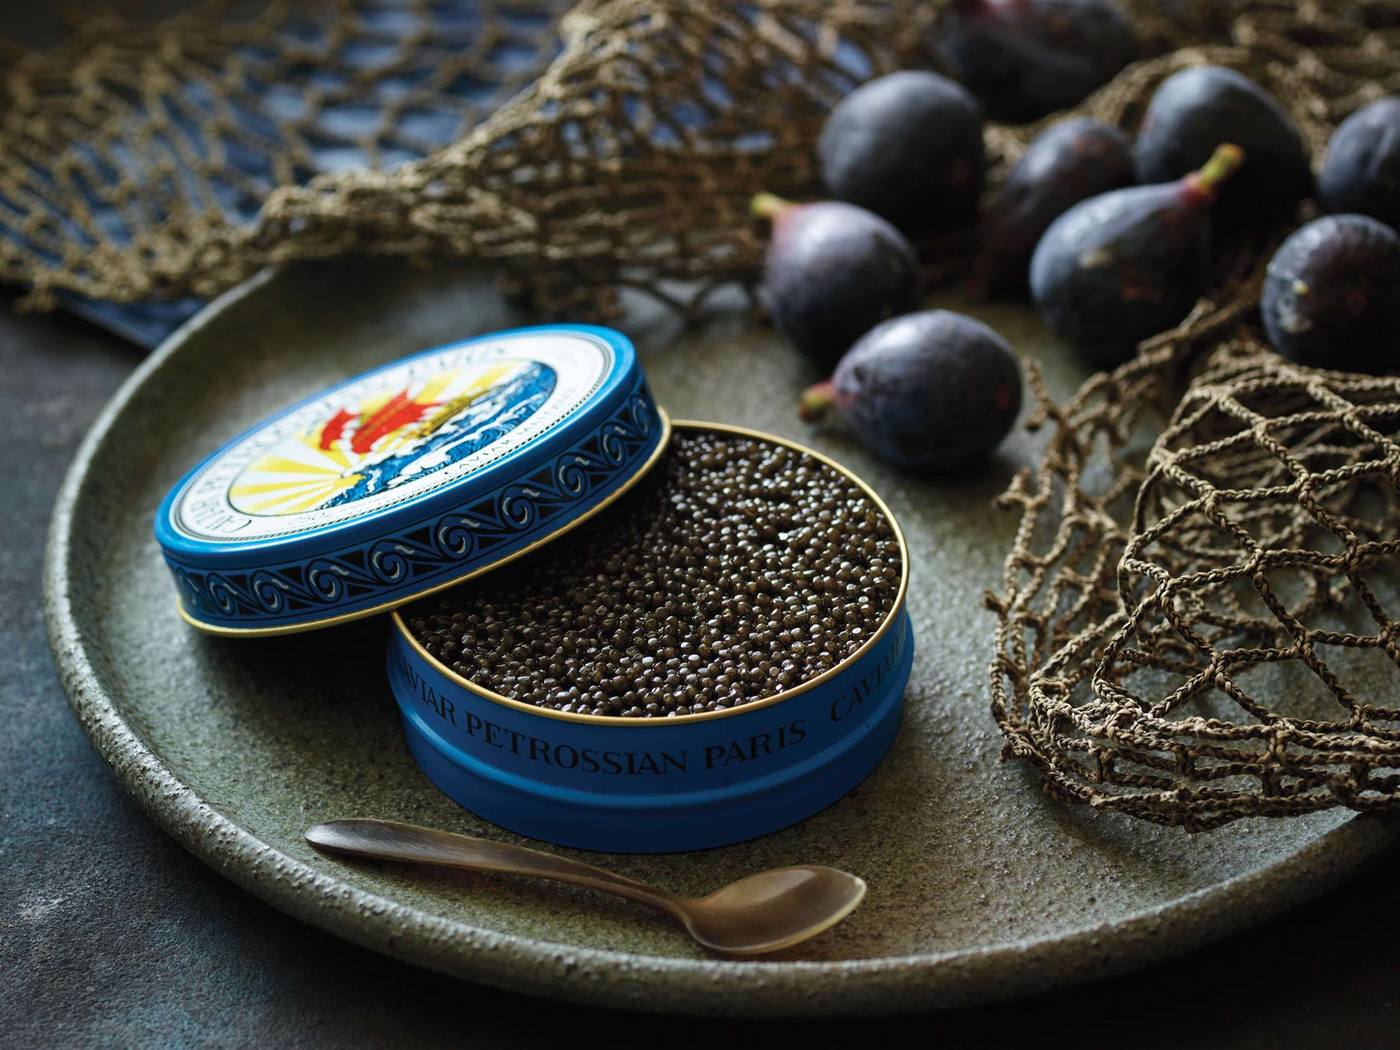 imagen 4 de Petrossian inaugura el mejor resturante francés para comer caviar.